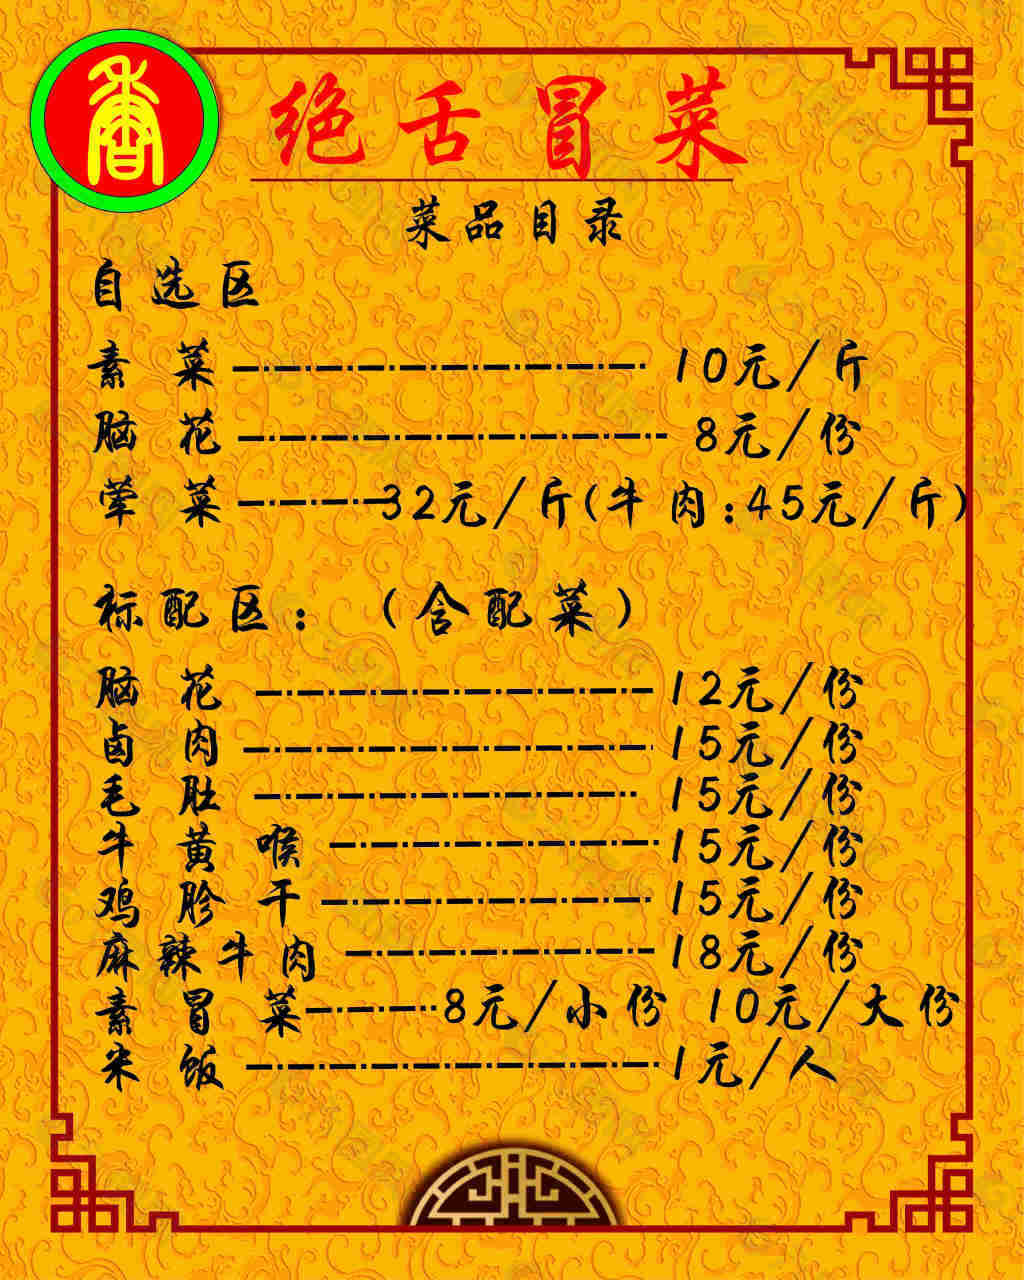 中国风菜单菜谱免费下载